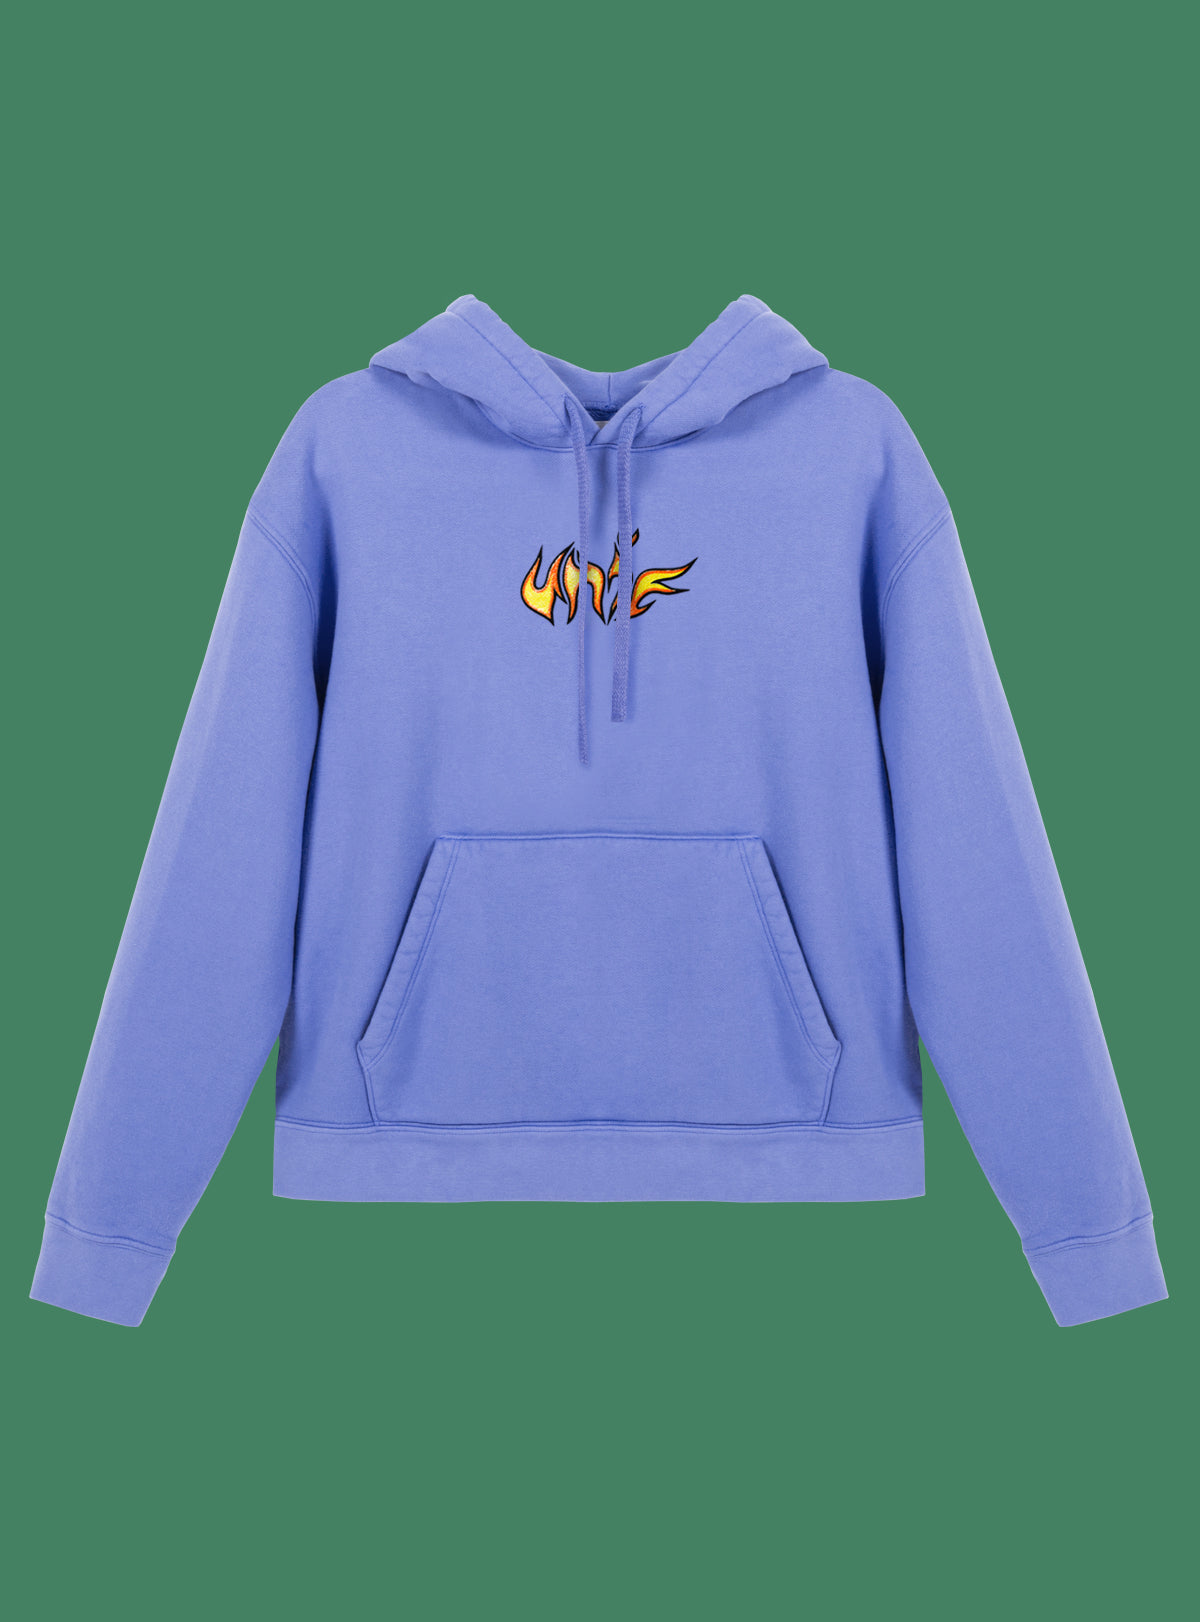 UNIF flame hoodie